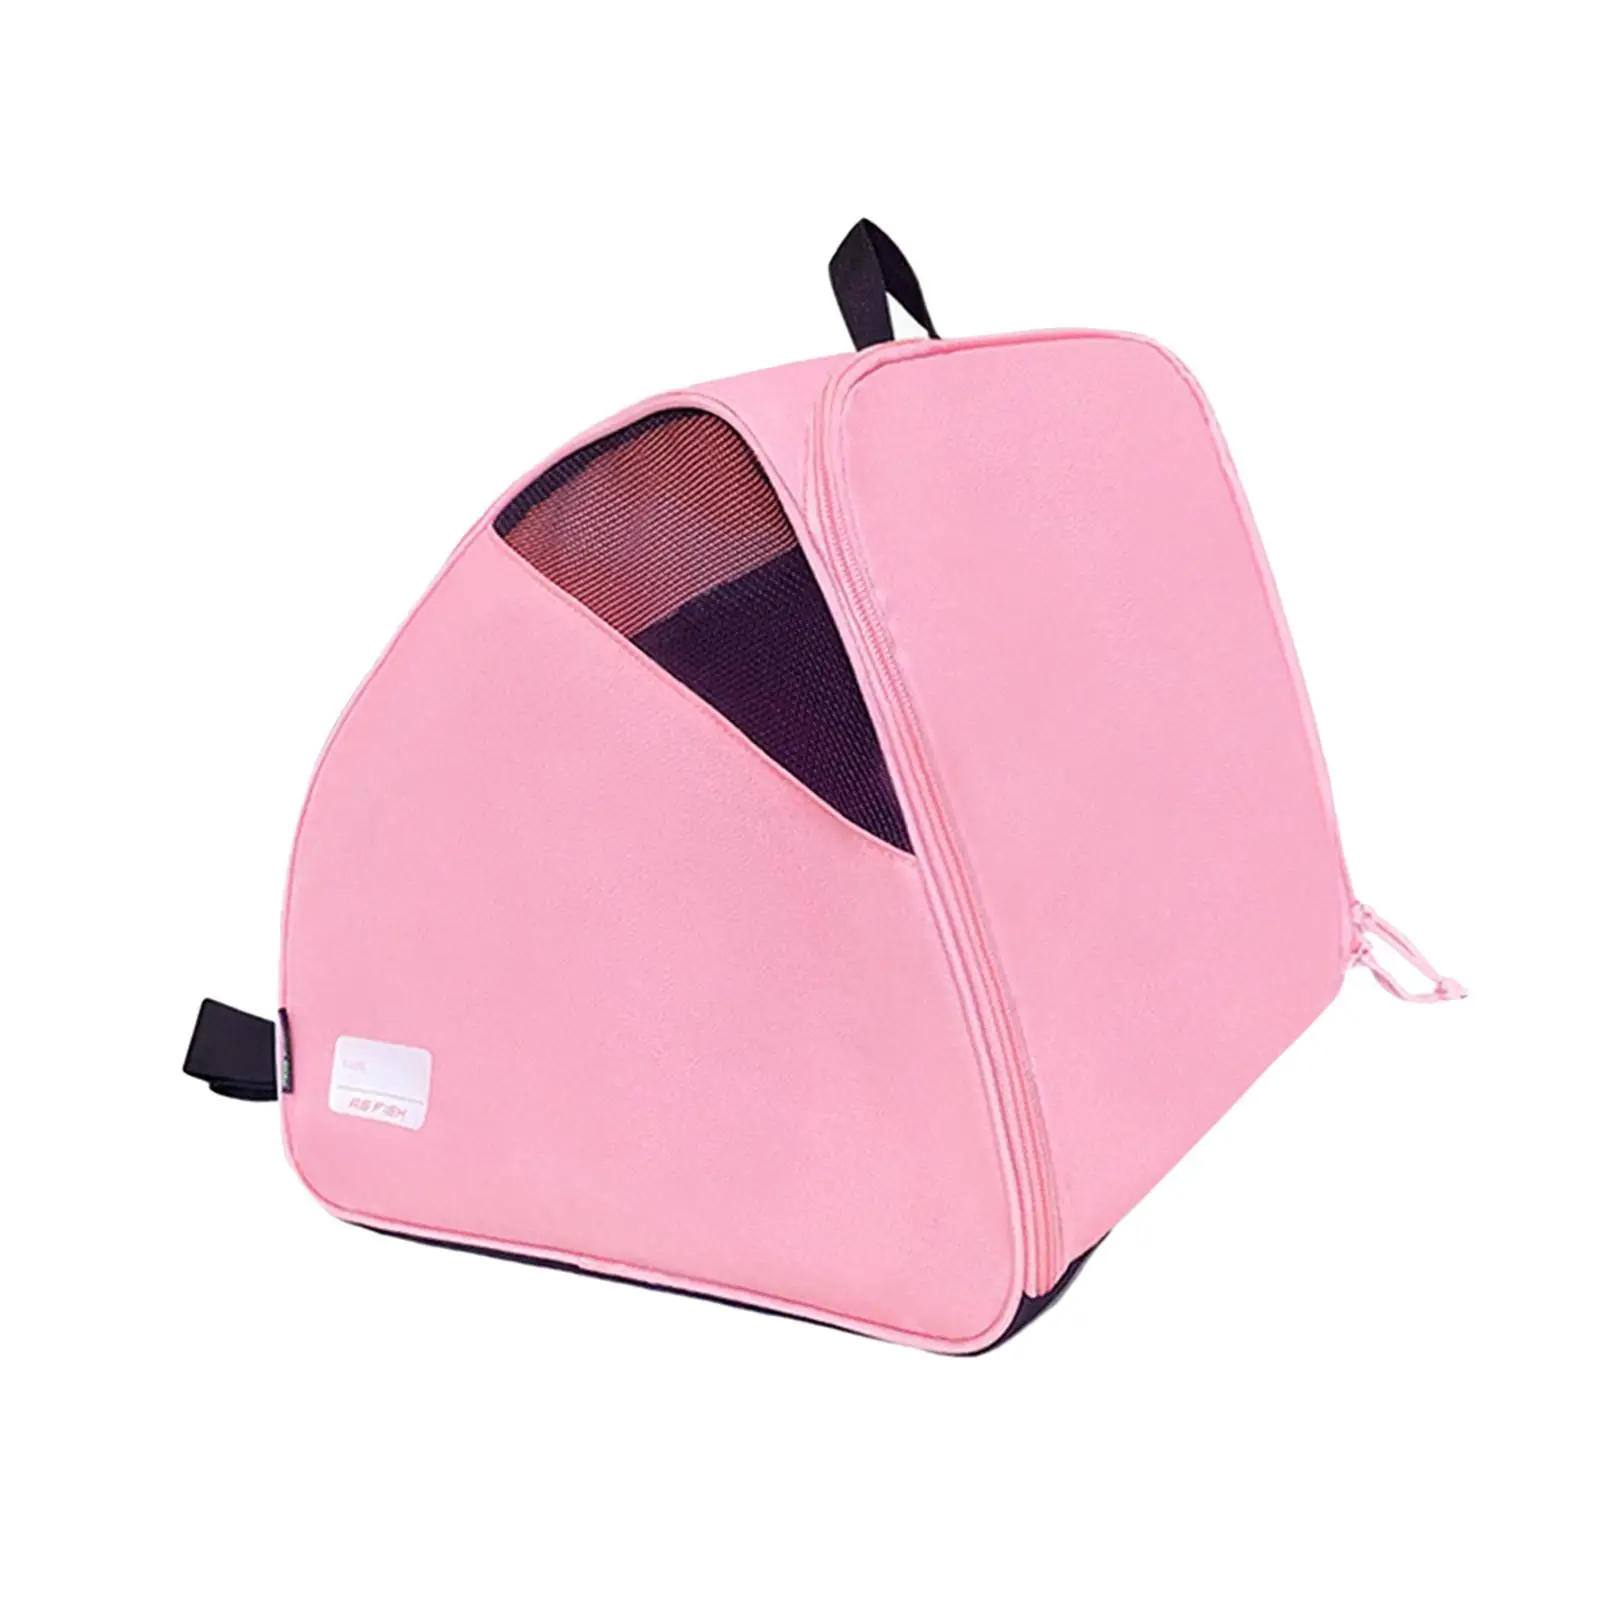 Roller Skate Bag Skating Shoes Storage Bag with Adjustable Shoulder Strap Waterproof Ice Skate Carrier Bag for Ice Skates